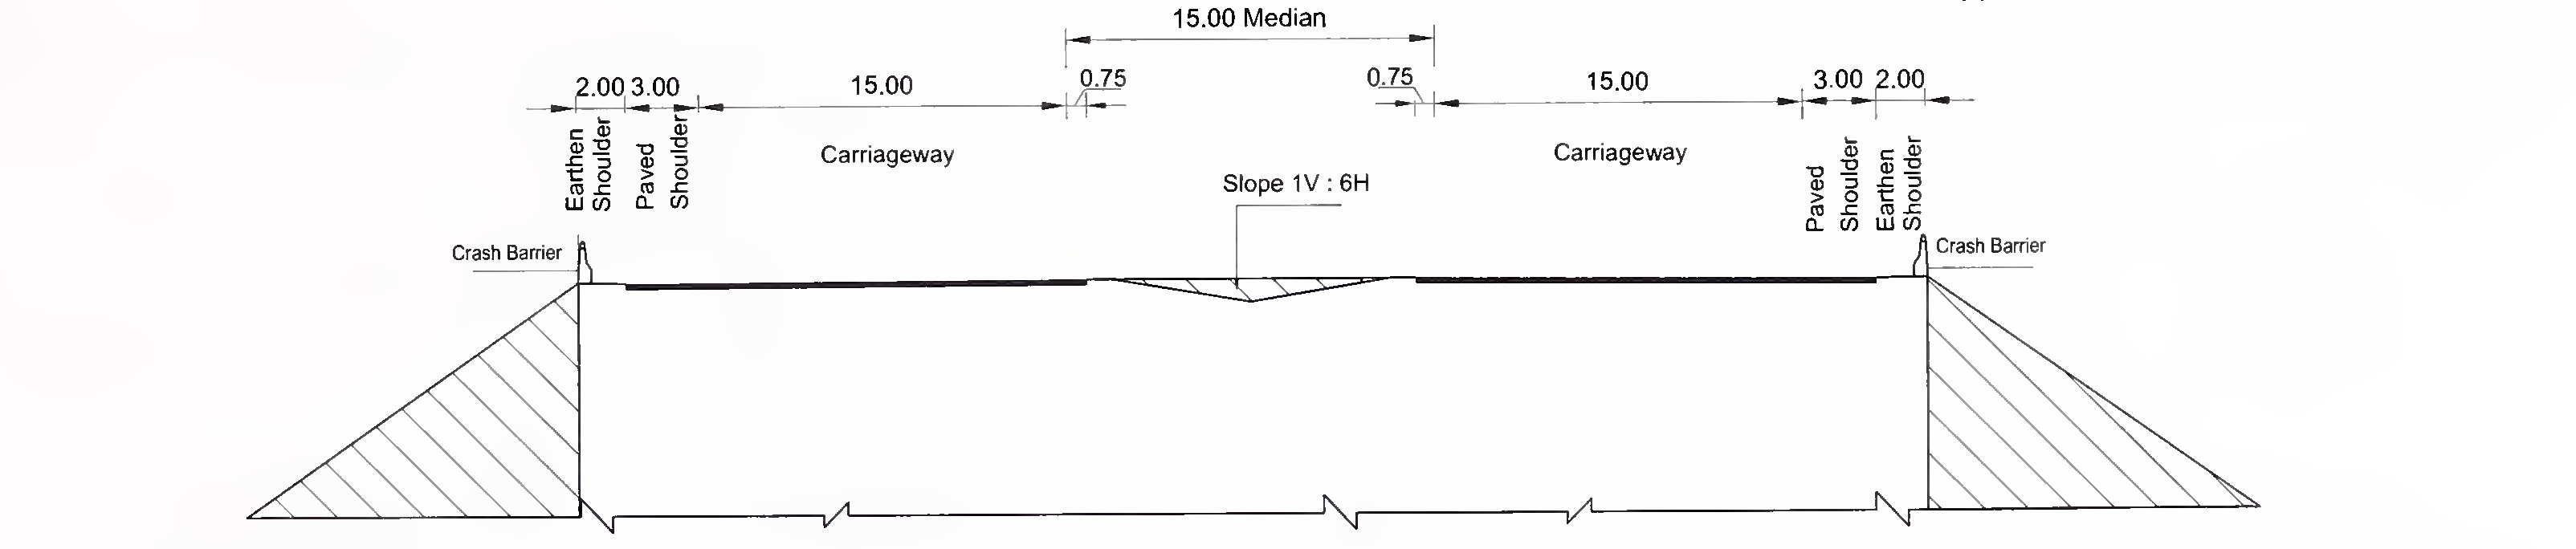 ಚಿತ್ರ 6.3 (ಸಿ) ಖಿನ್ನತೆಗೆ ಒಳಗಾದ ಮಧ್ಯಮದೊಂದಿಗೆ 8-ಲೇನ್ (2 × 4) ಎಕ್ಸ್‌ಪ್ರೆಸ್‌ವೇಗಾಗಿ ಸ್ಲ್ಯಾಬ್ ಮತ್ತು ಬಾಕ್ಸ್ ಪ್ರಕಾರದ ಕಲ್ವರ್ಟ್‌ನ ವಿಶಿಷ್ಟ ಅಡ್ಡ-ವಿಭಾಗ